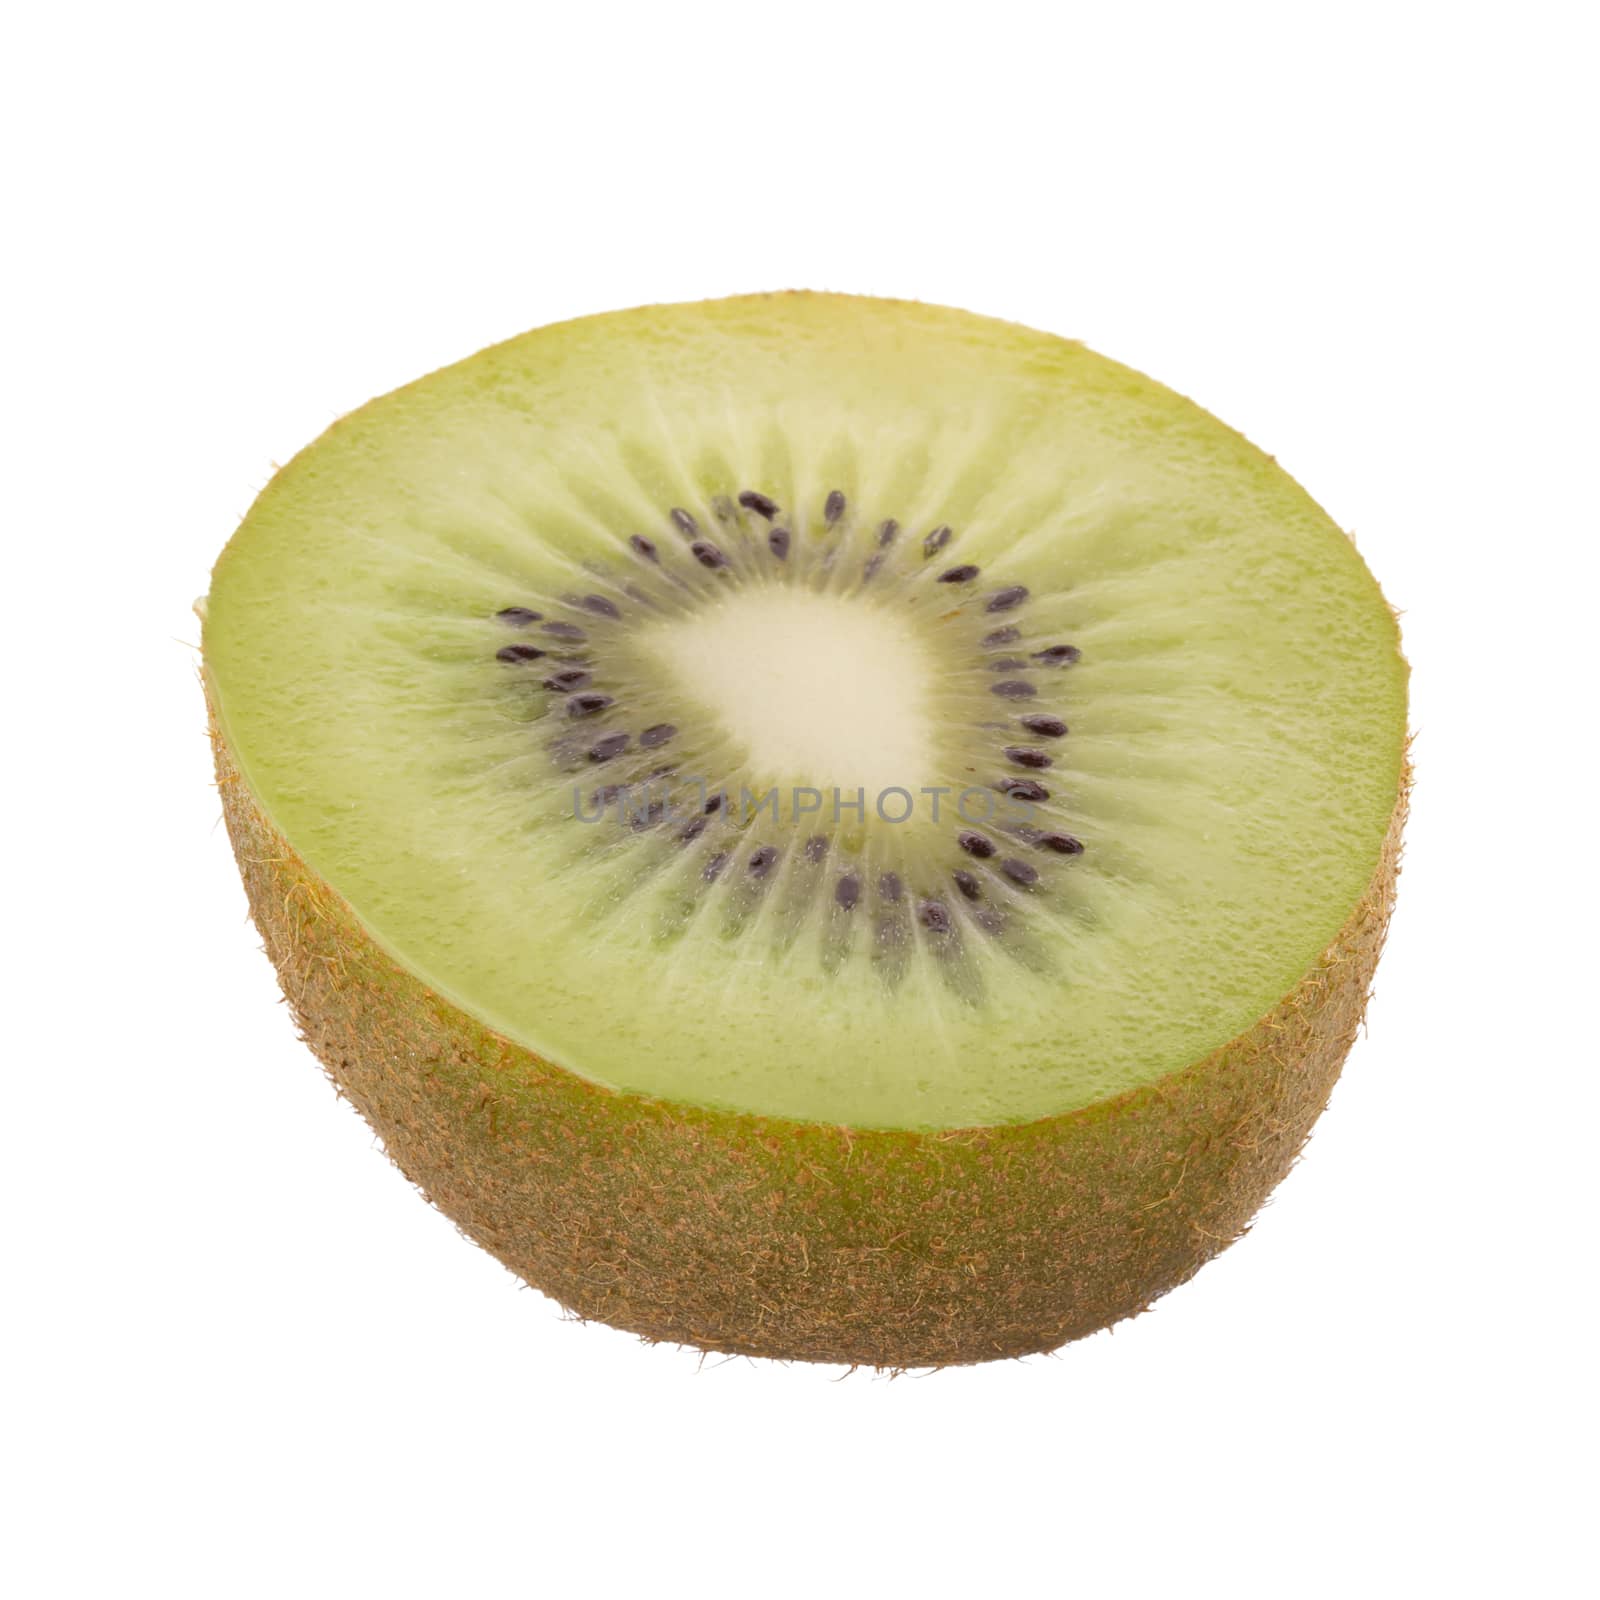 kiwi fruit and kiwi fruit sliced isolated on white background.